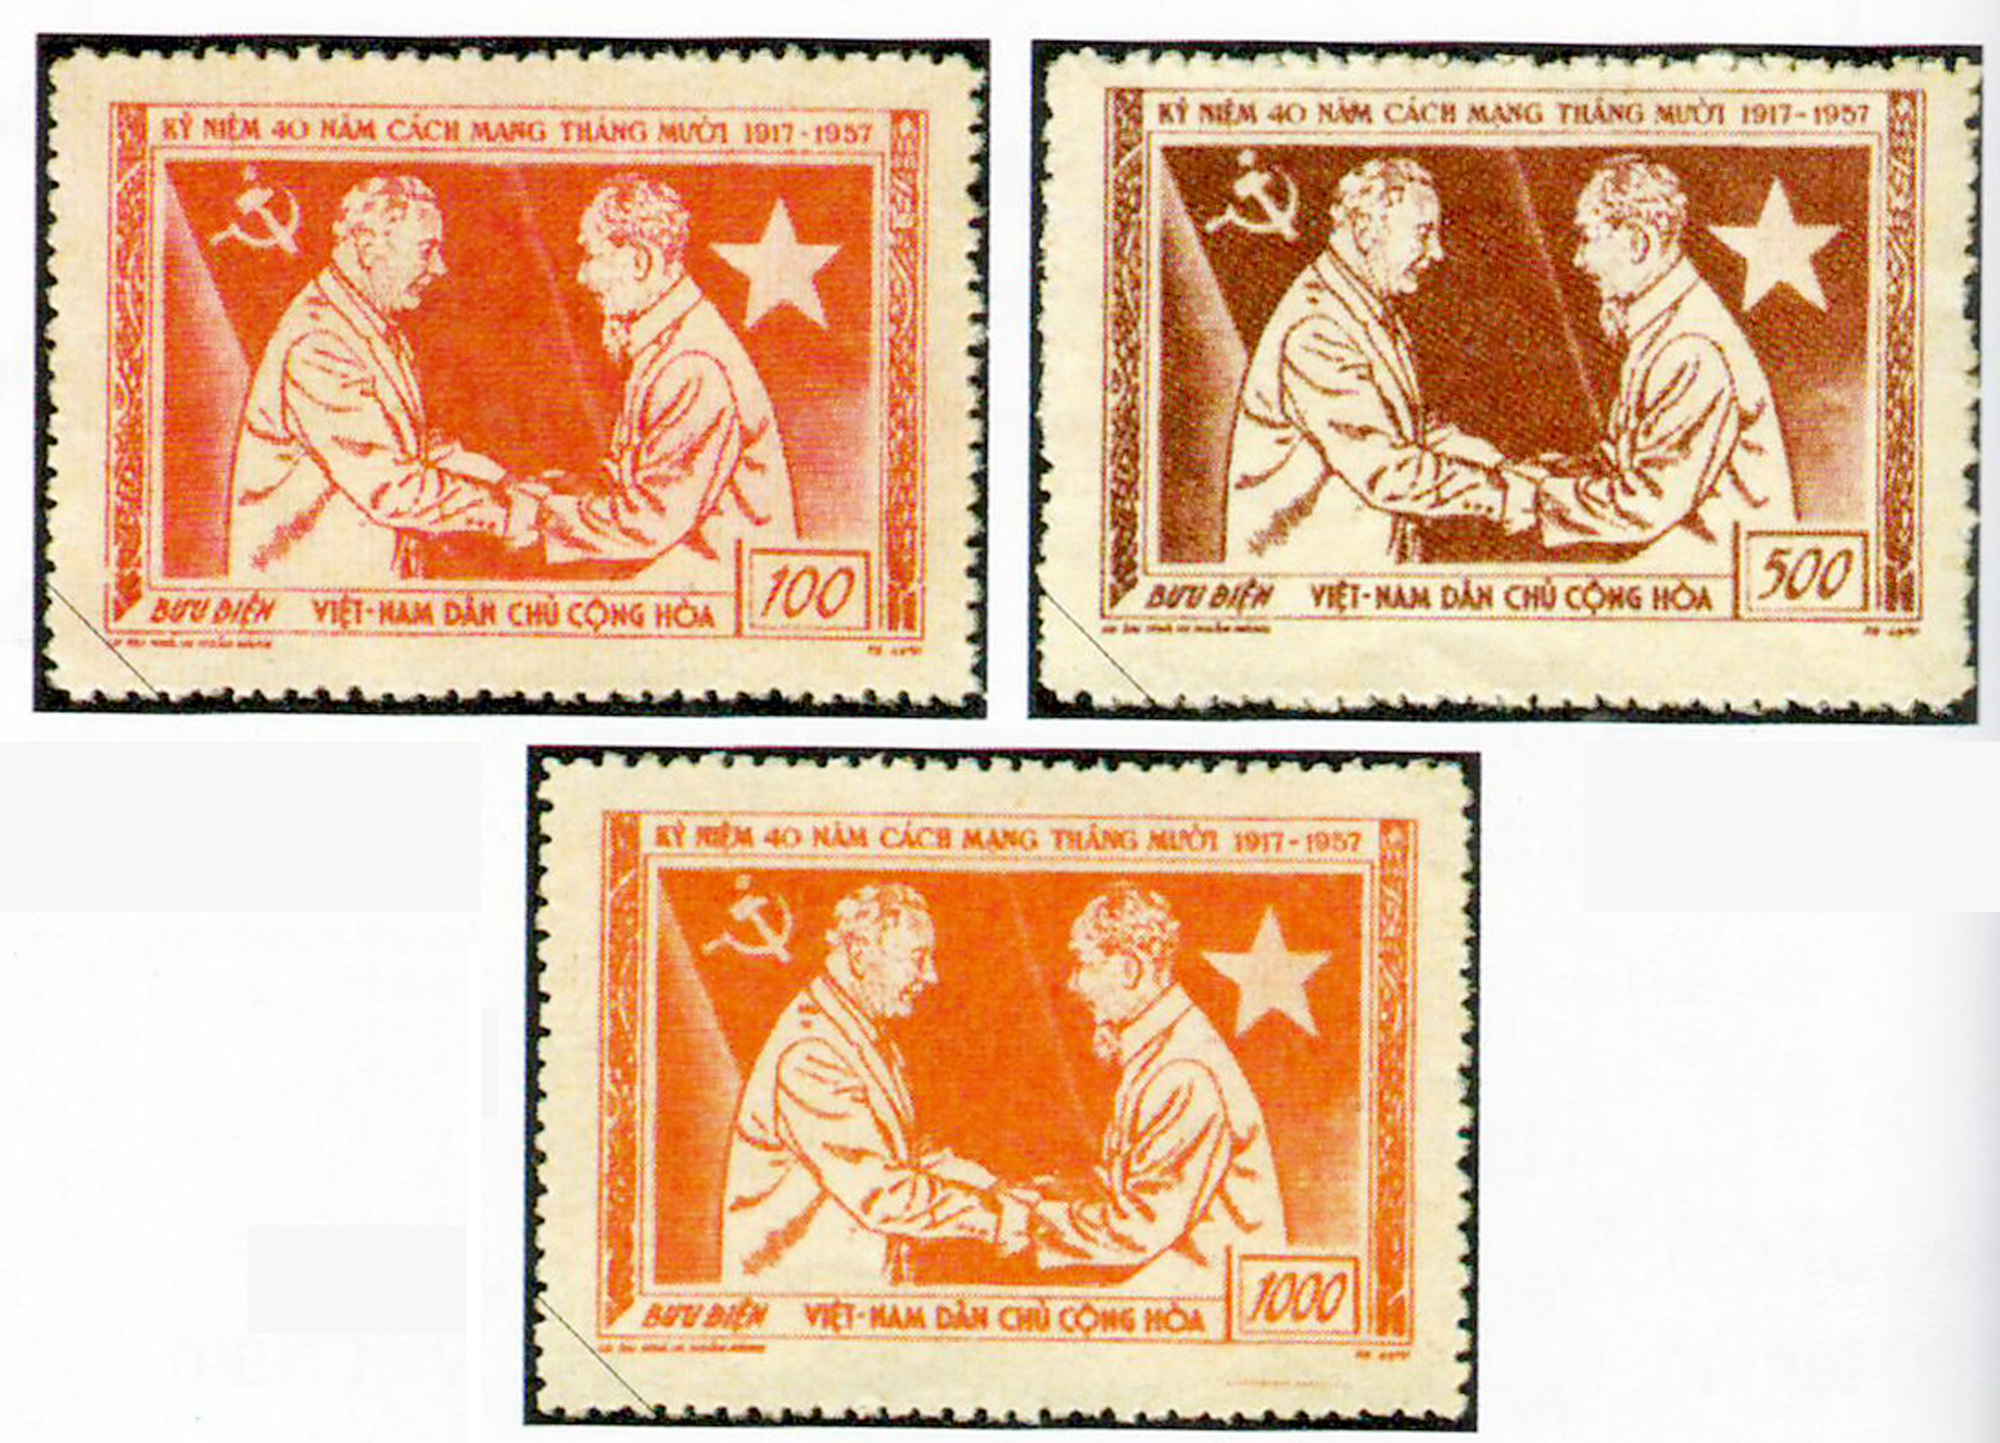 Bộ tem kỷ niệm 40 năm Cách mạng tháng Mười Nga (7/11/1917-1957) do họa sỹ Tạ Lựu thiết kế. Trong ảnh là Chủ tịch Hồ Chí Minh và Chủ tịch Vô-rô-si-lốp.